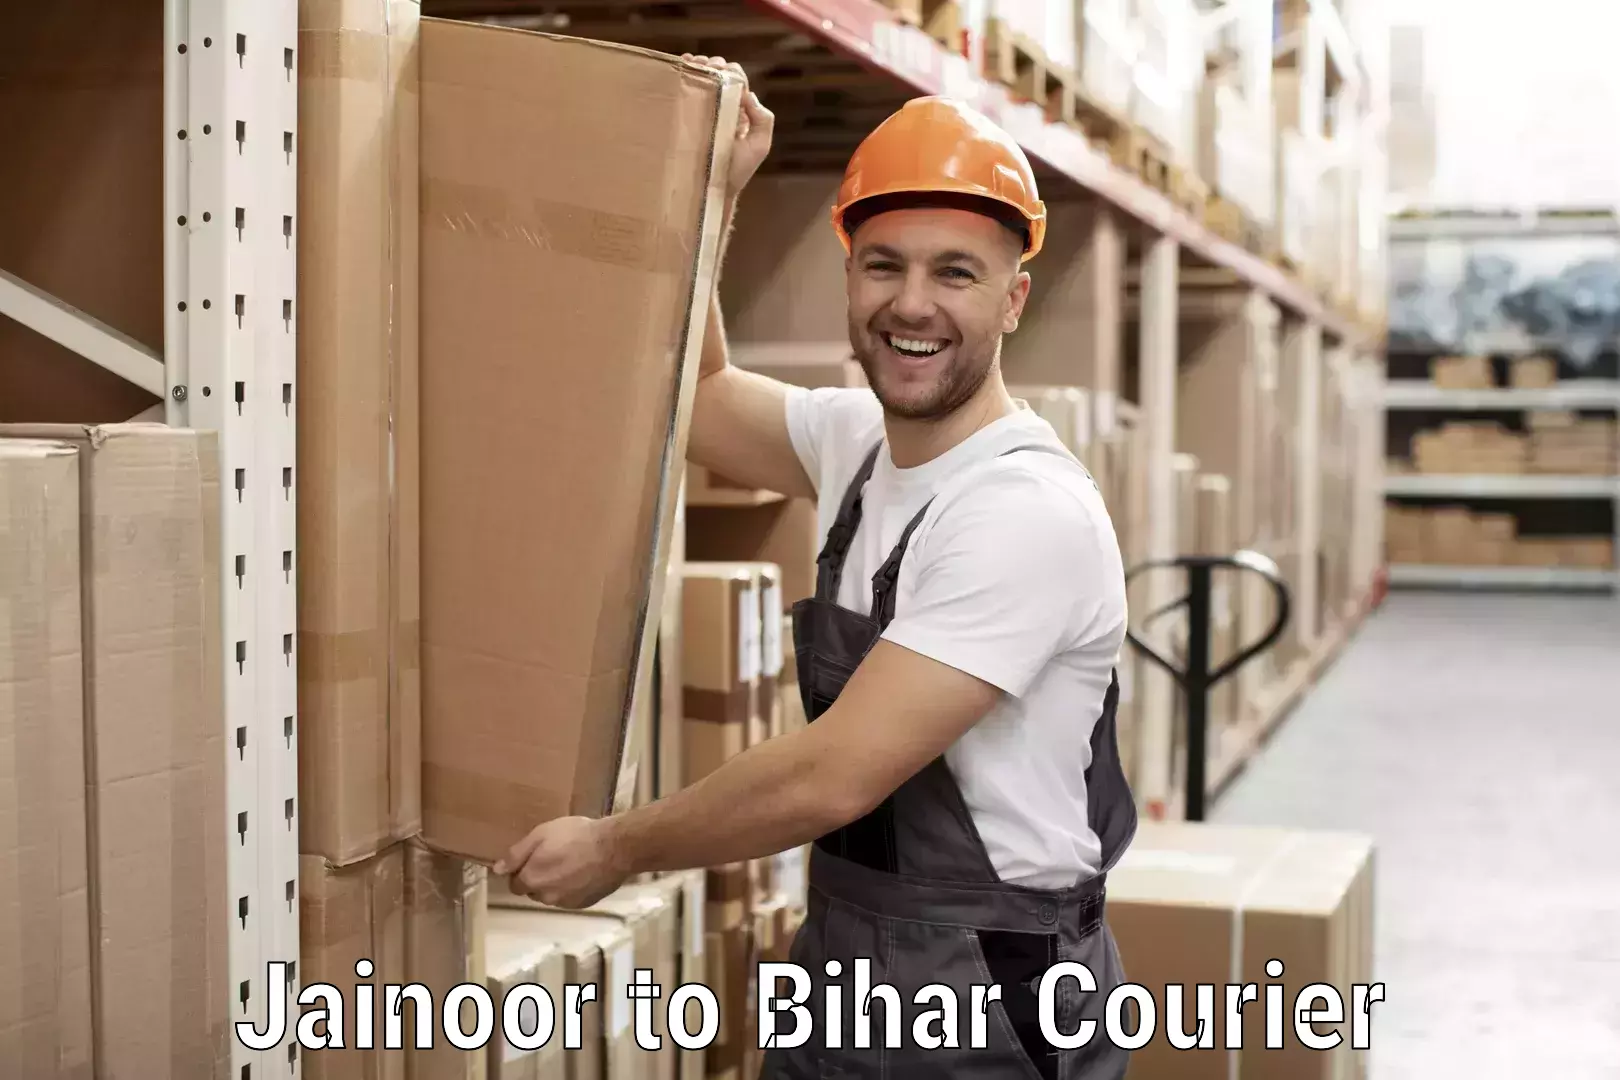 Global courier networks Jainoor to Jalalgarh